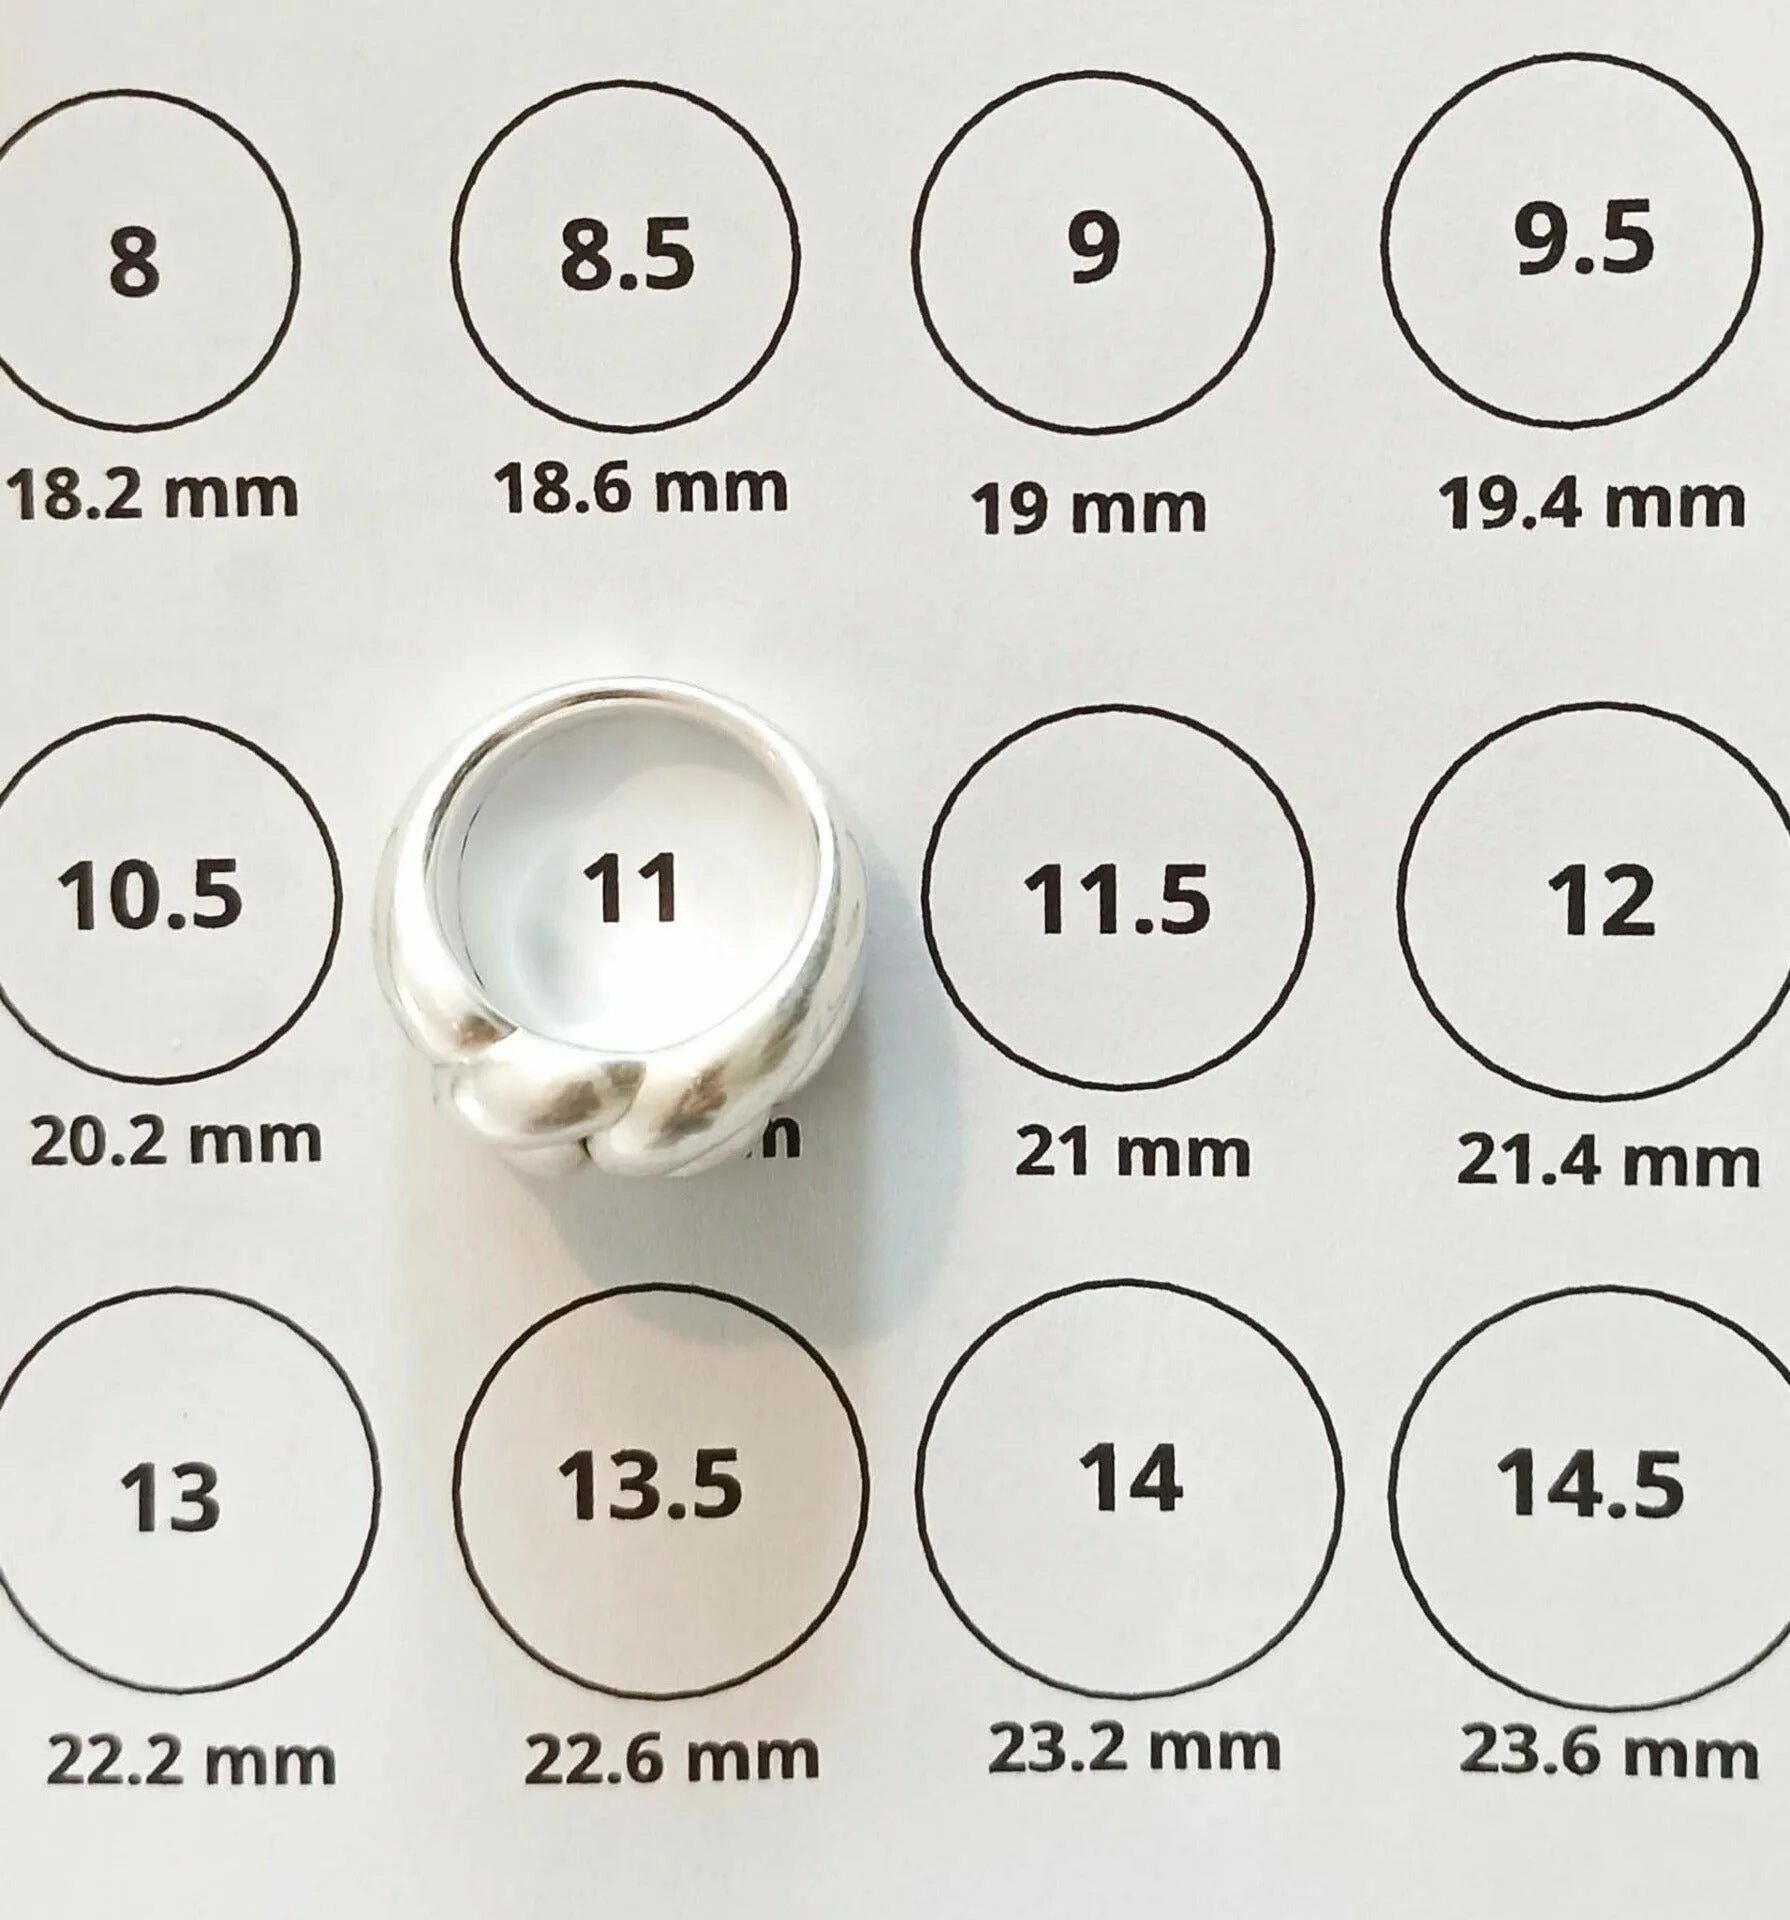 55 Мм размер кольца. 60 Мм размер кольца. 8 Мм размер кольца. 55 Мм размер кольца женского.